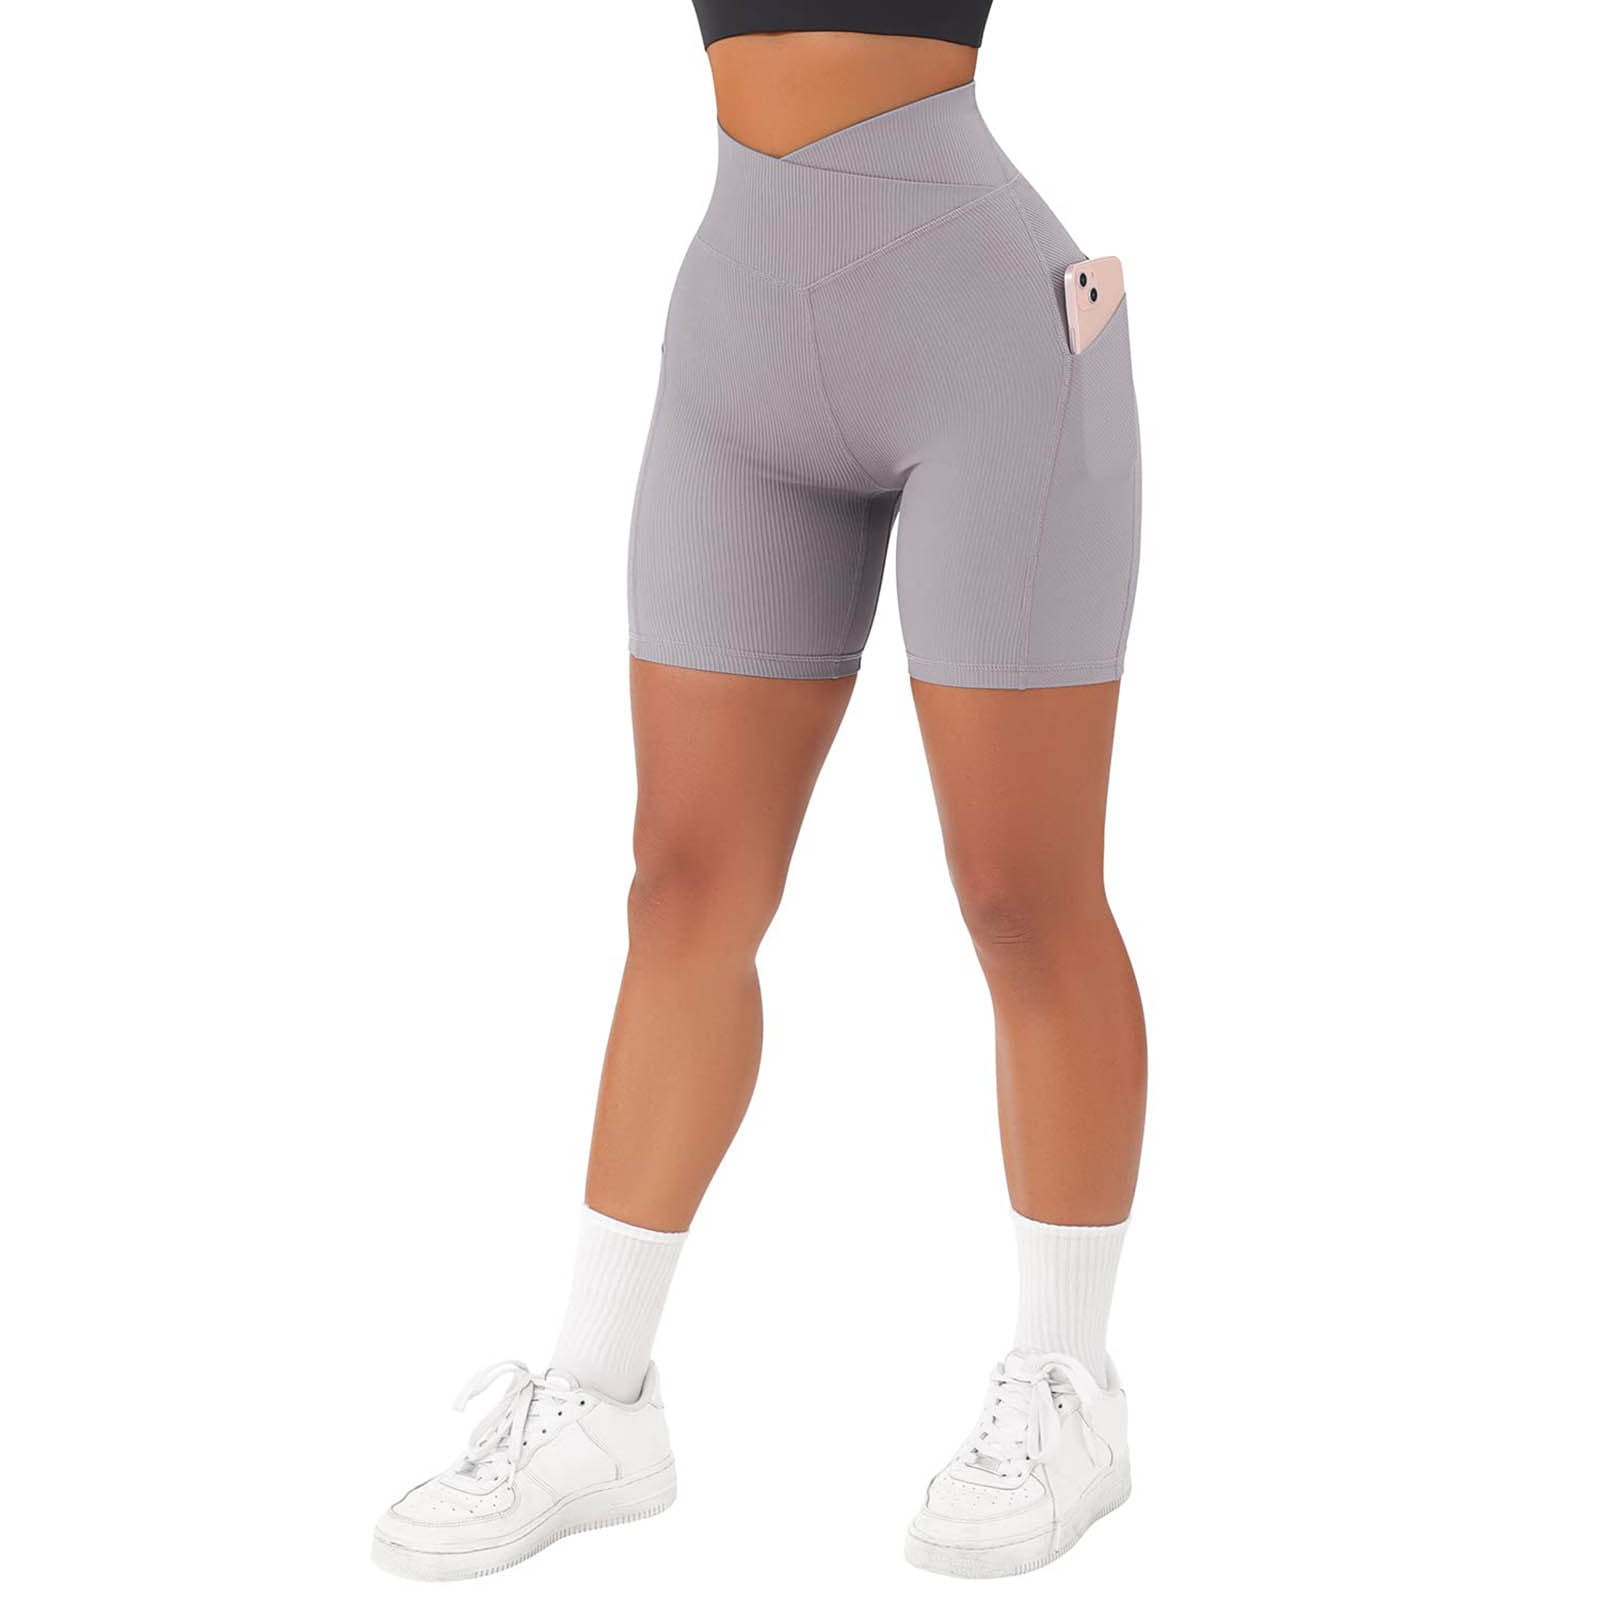  V Biker Waisted Waist Shorts Shorts Butt Lifting Women